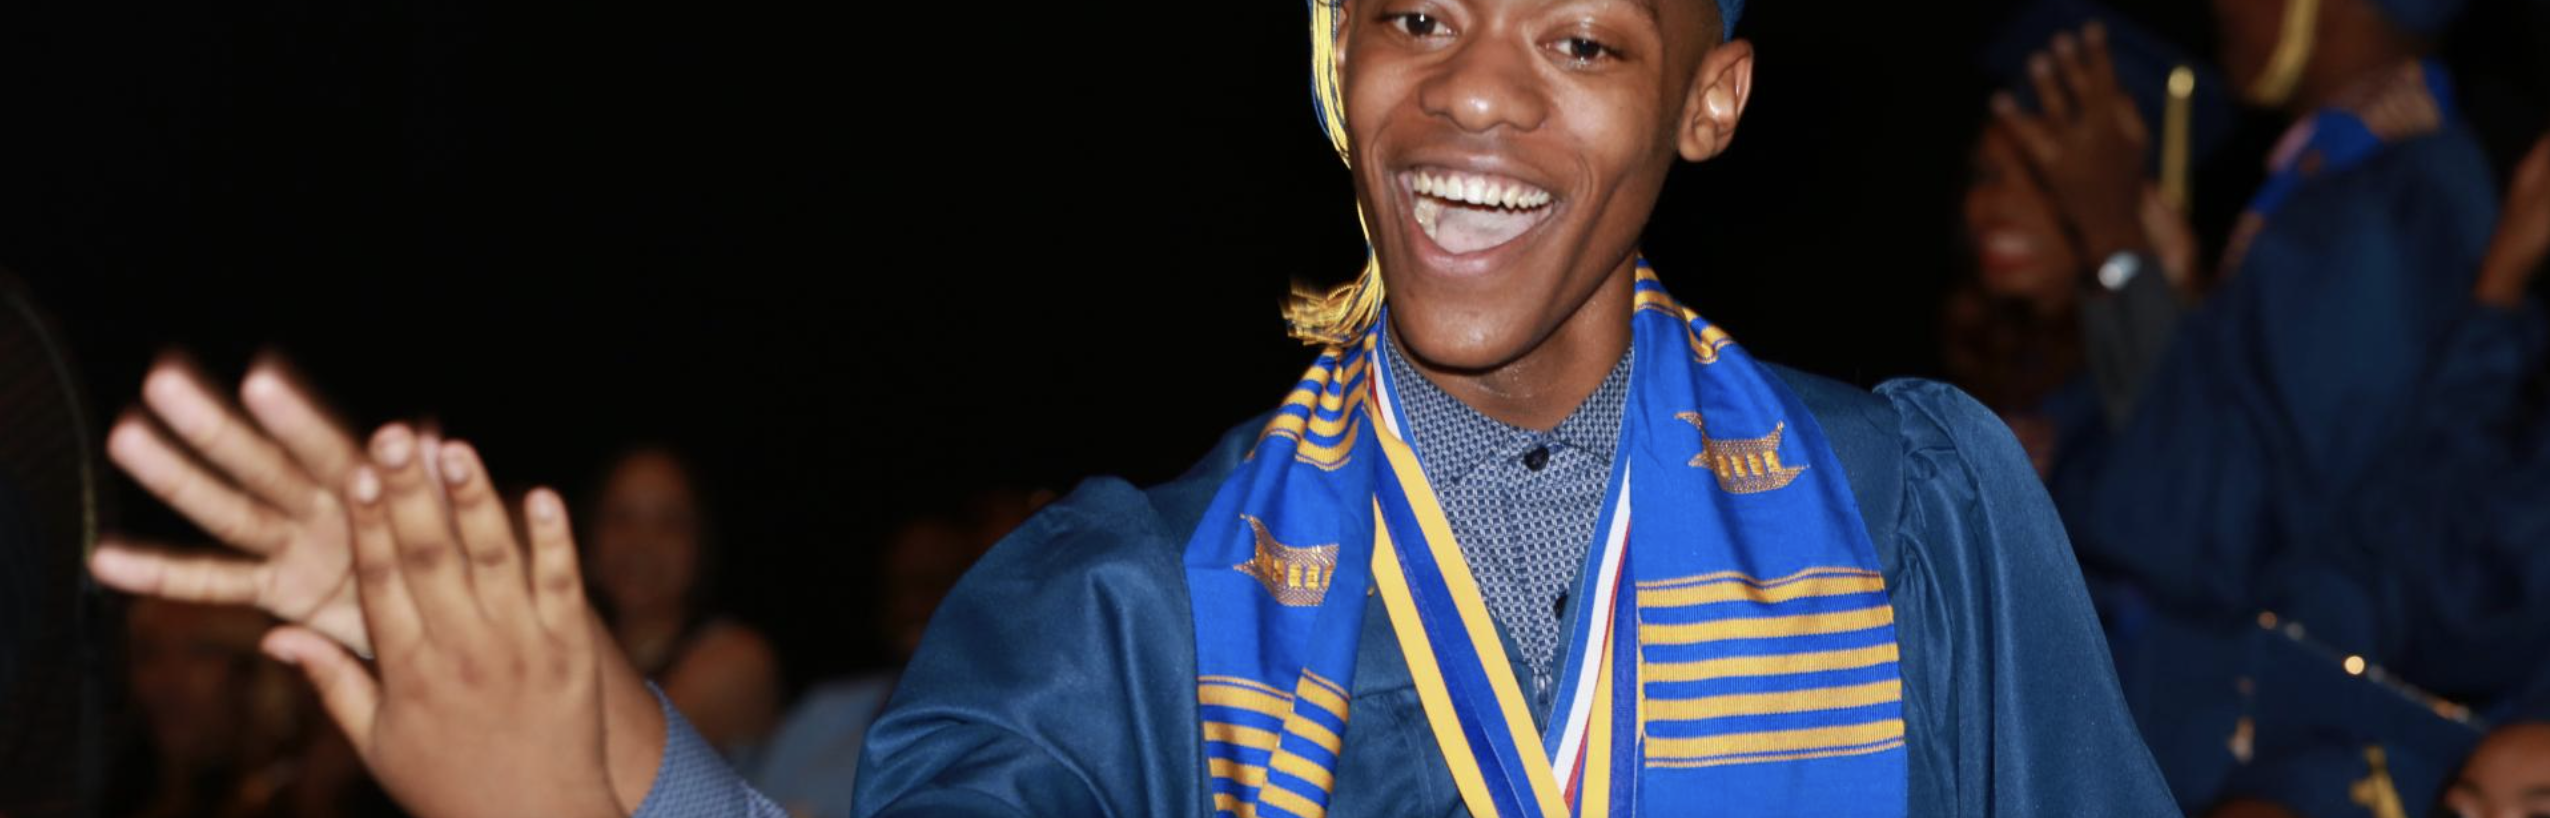 Boy at his graduation, smiling